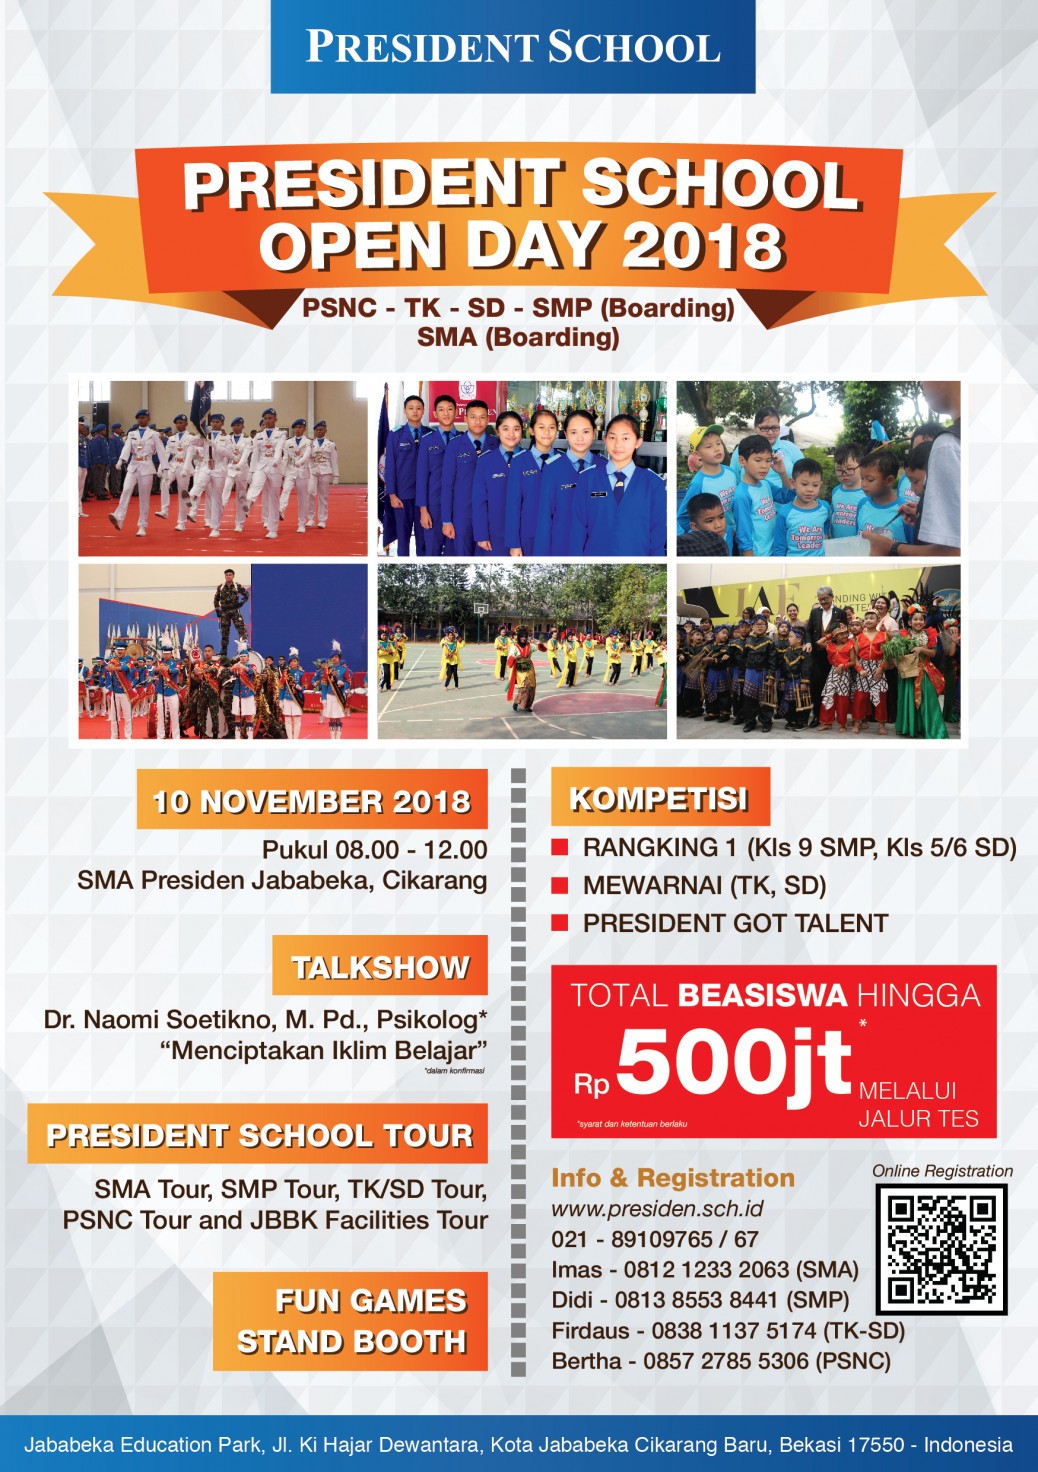 President School Open Day 2018